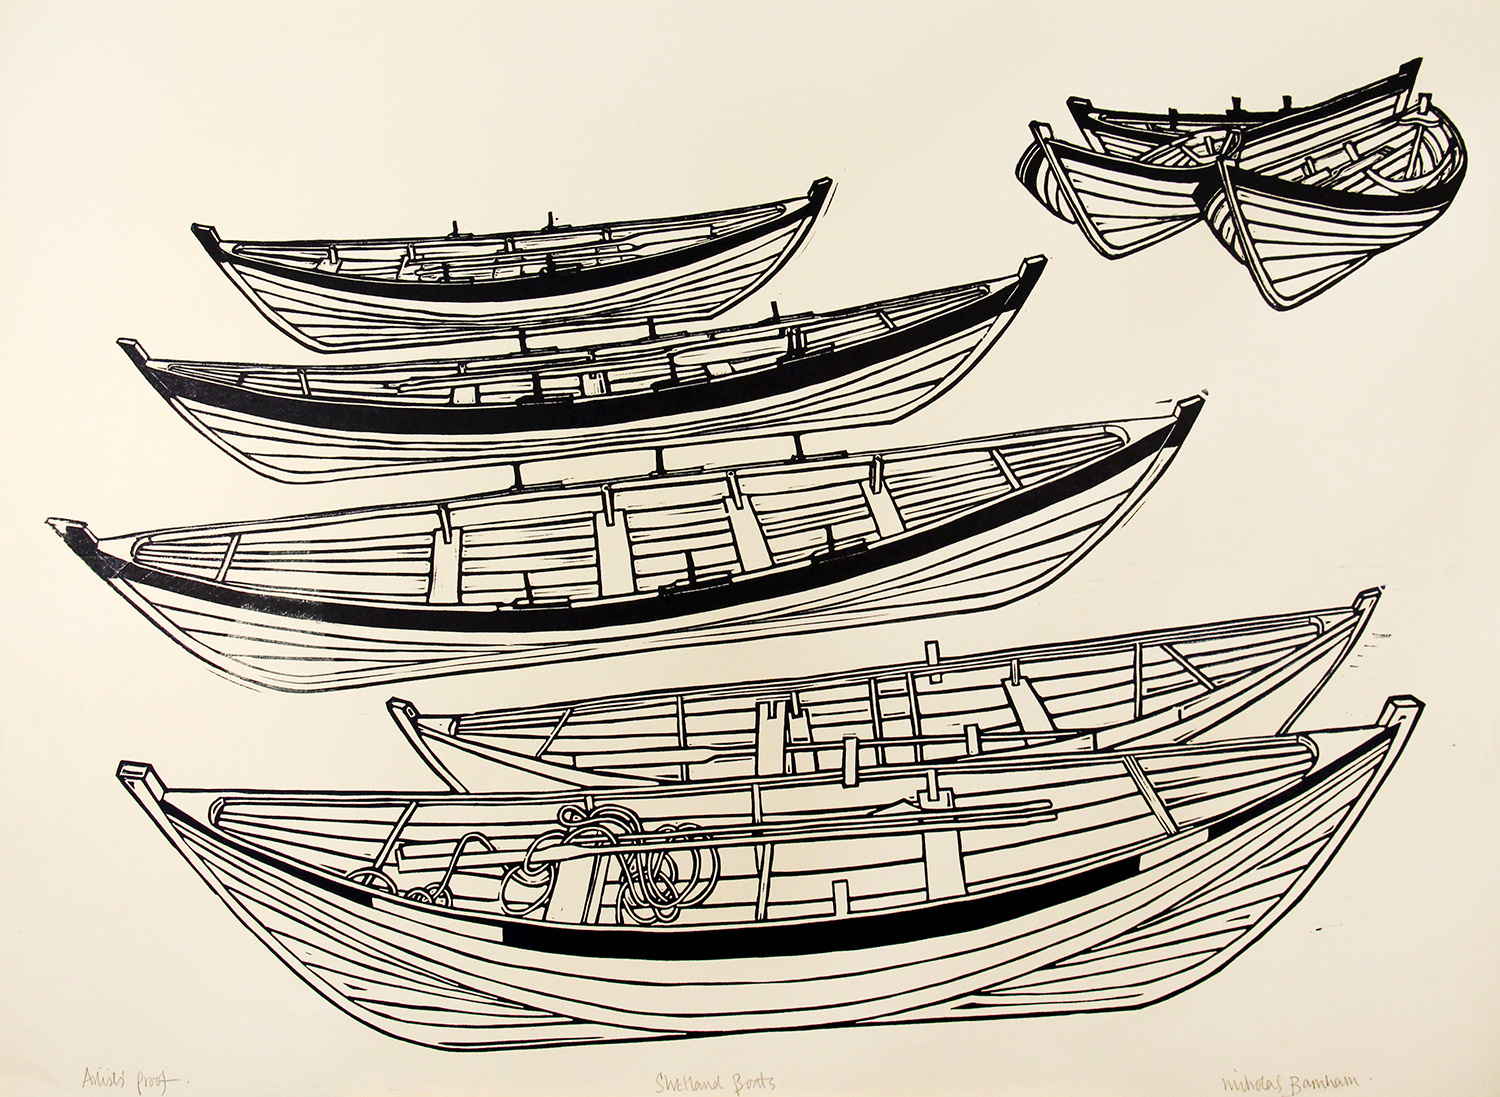 Shetland Boats by Nicholas Barnham